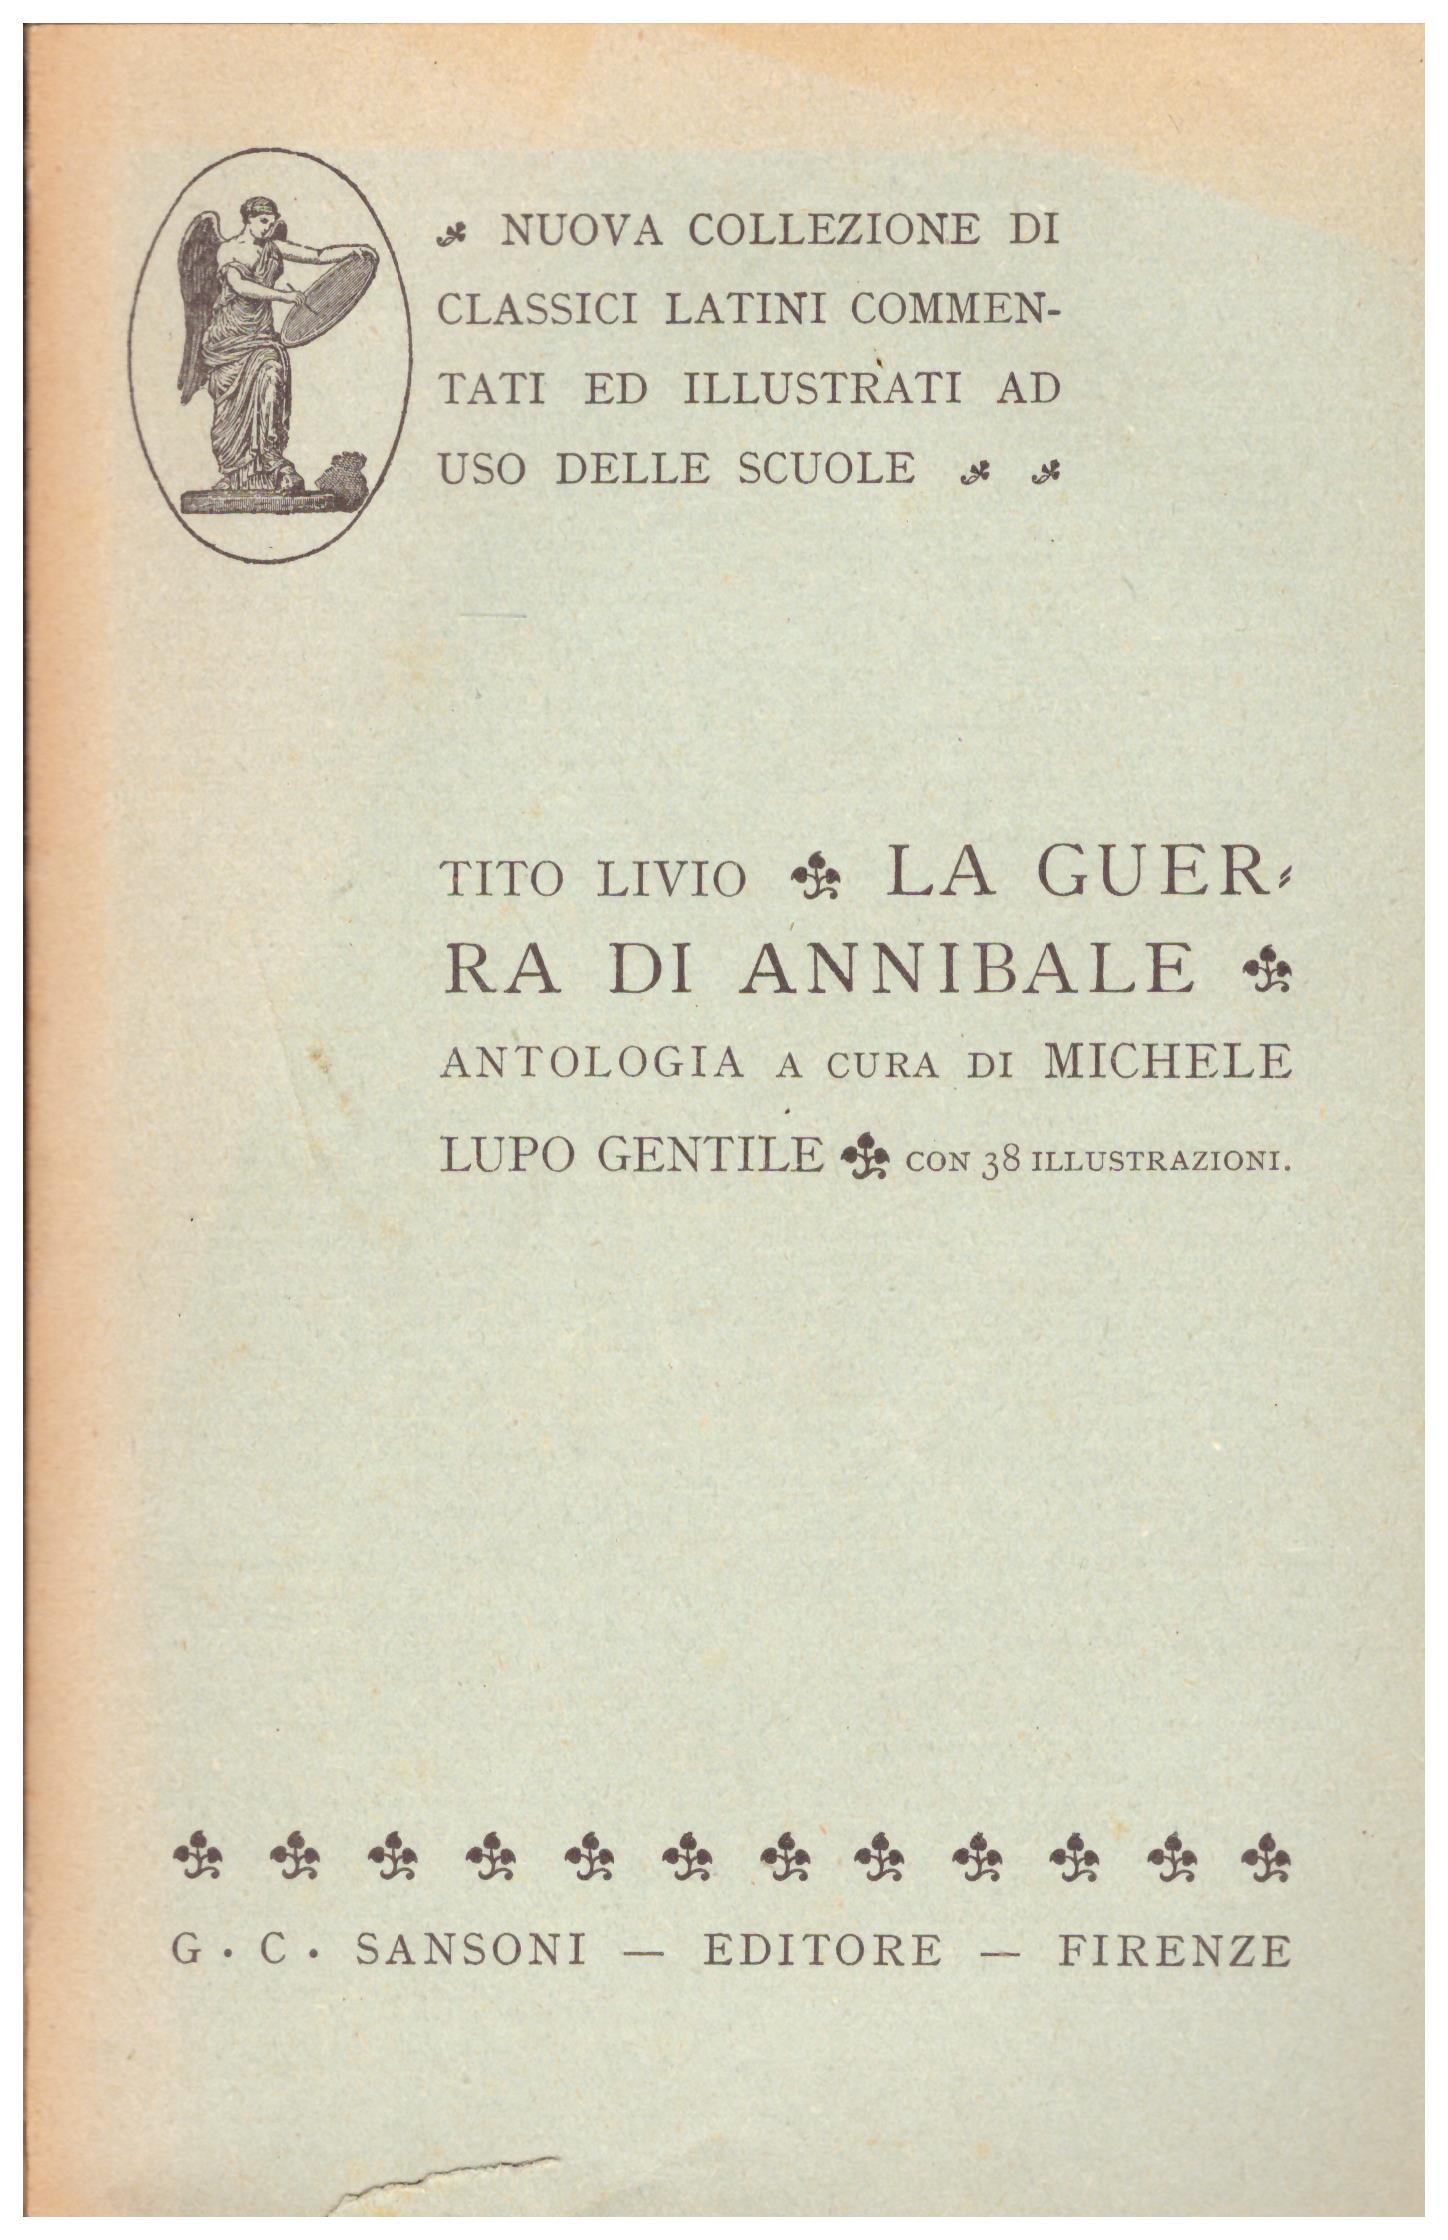 Titolo:  La guerra di Annibale, antologia a cura di Michele Lupo Gentile    Autore: Tito Livio    Editore: Sansoni